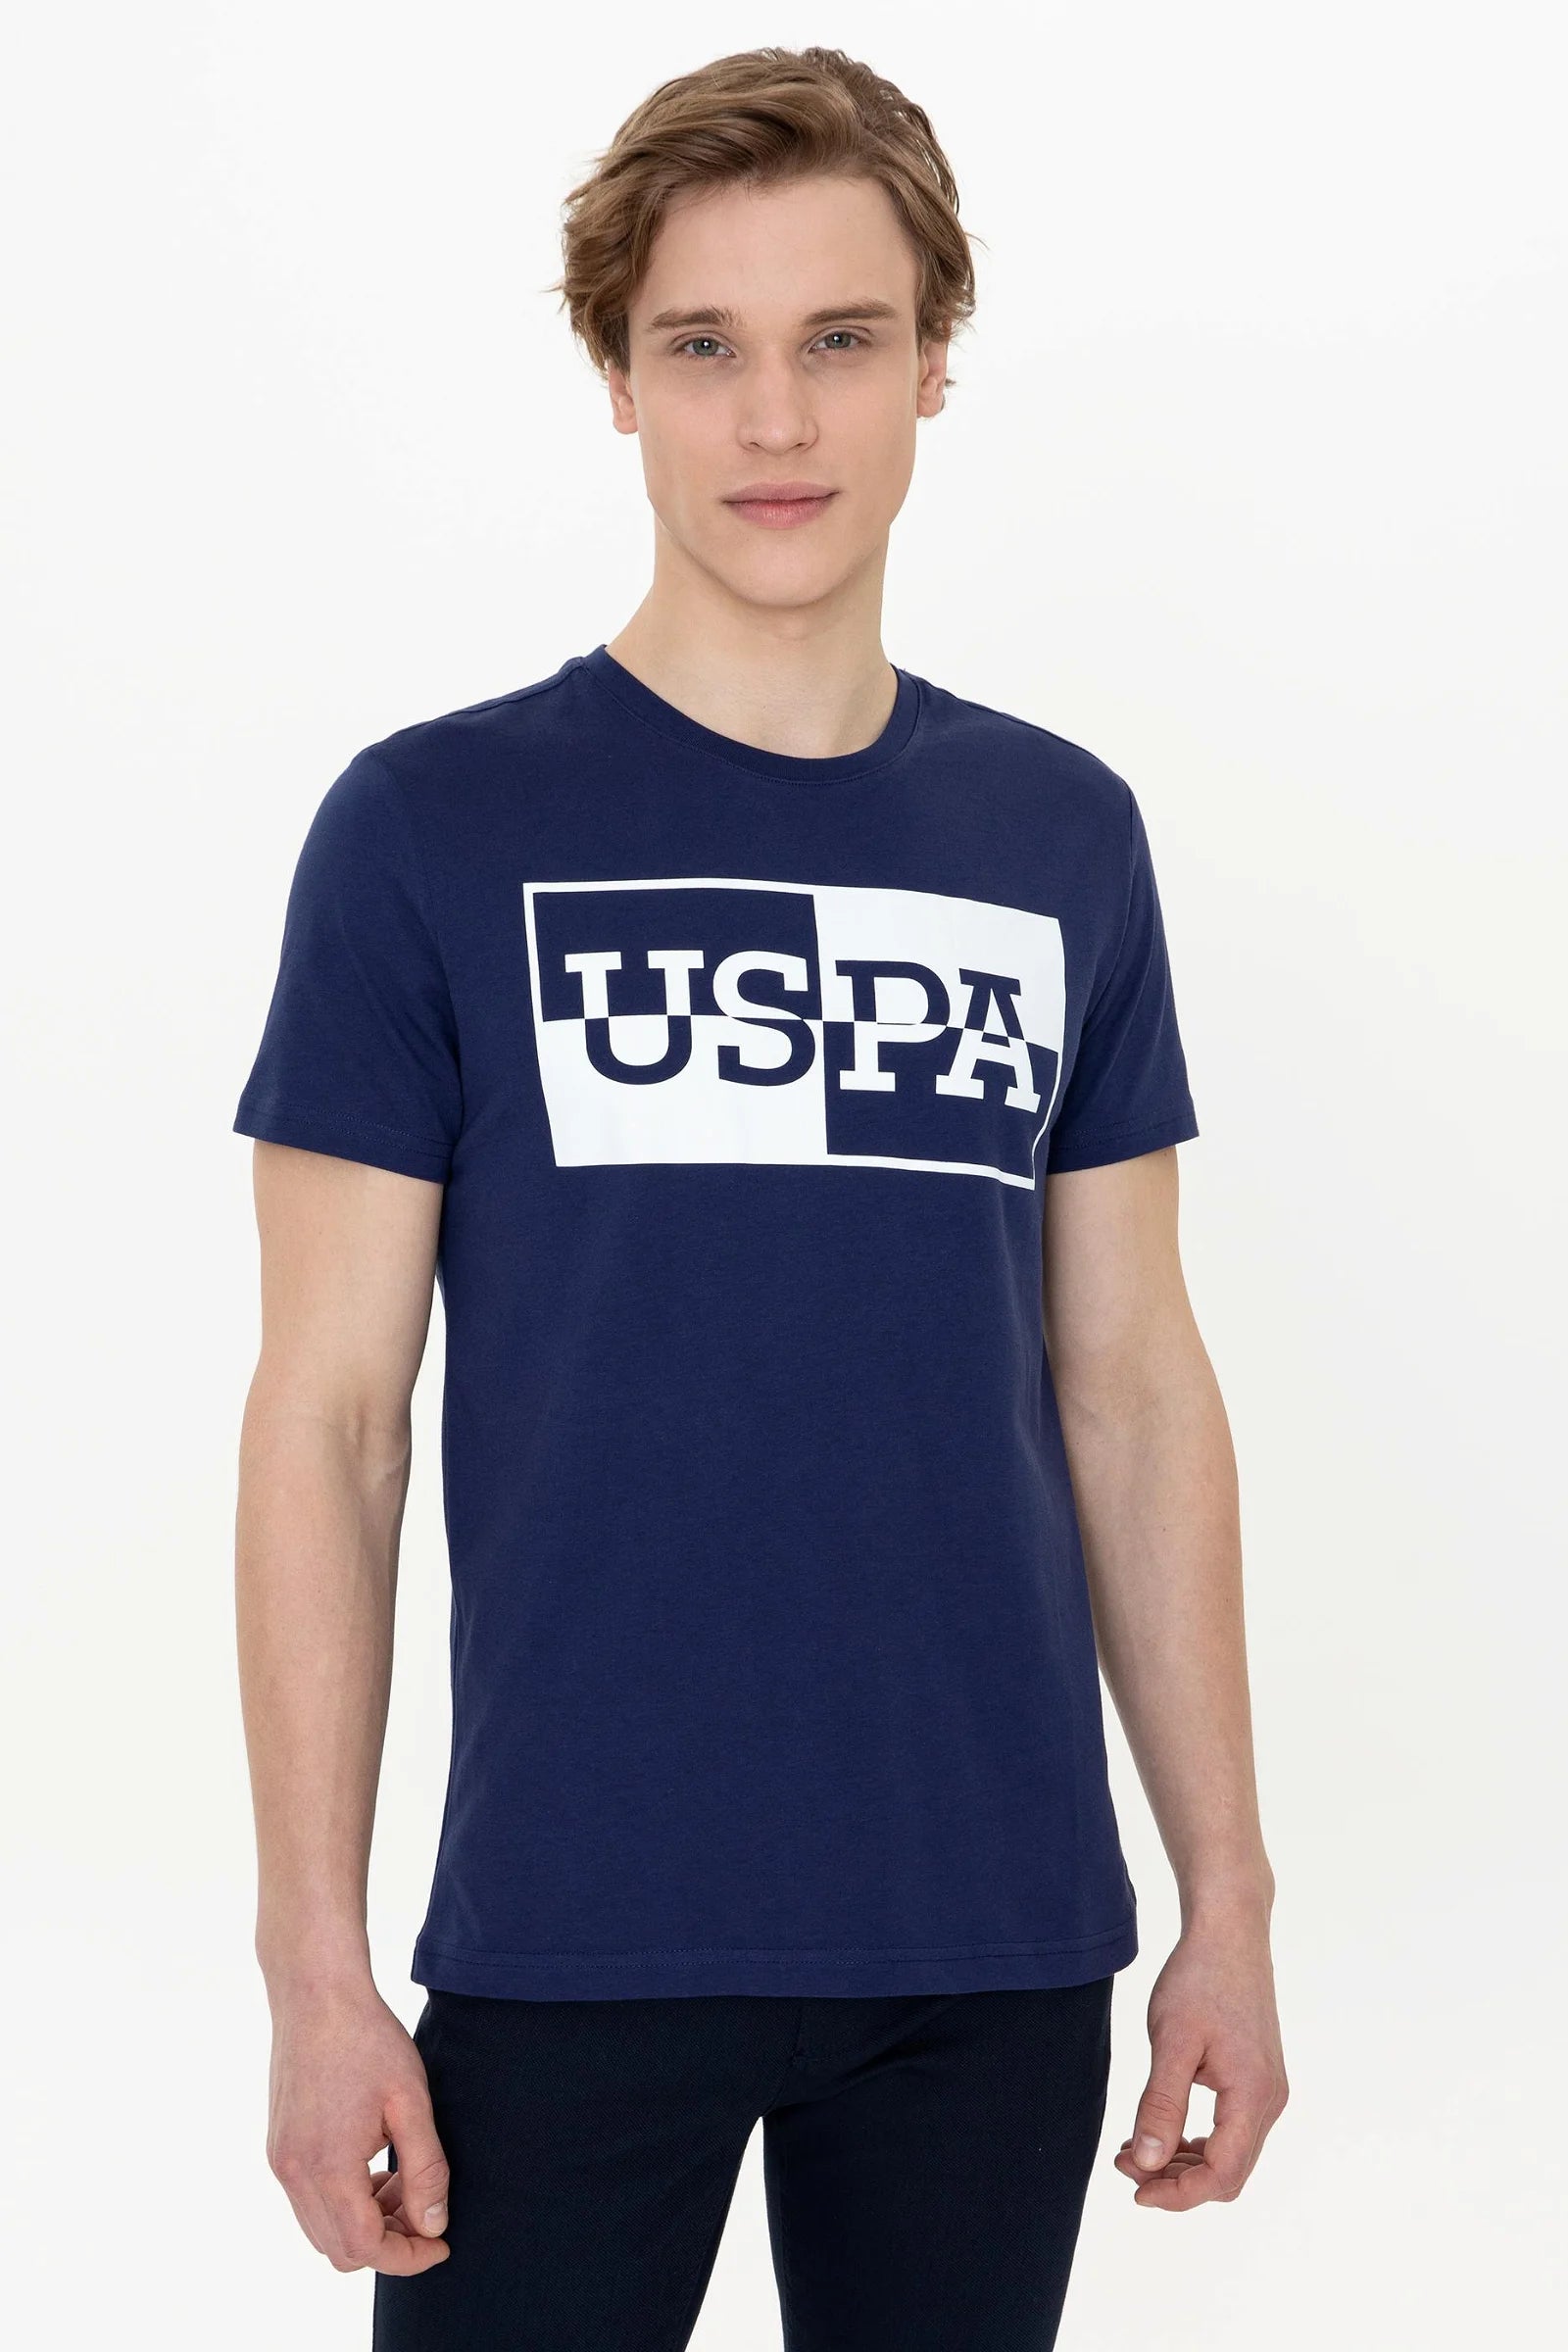 US Polo Assn. Crew Neck T-Shirt - Men